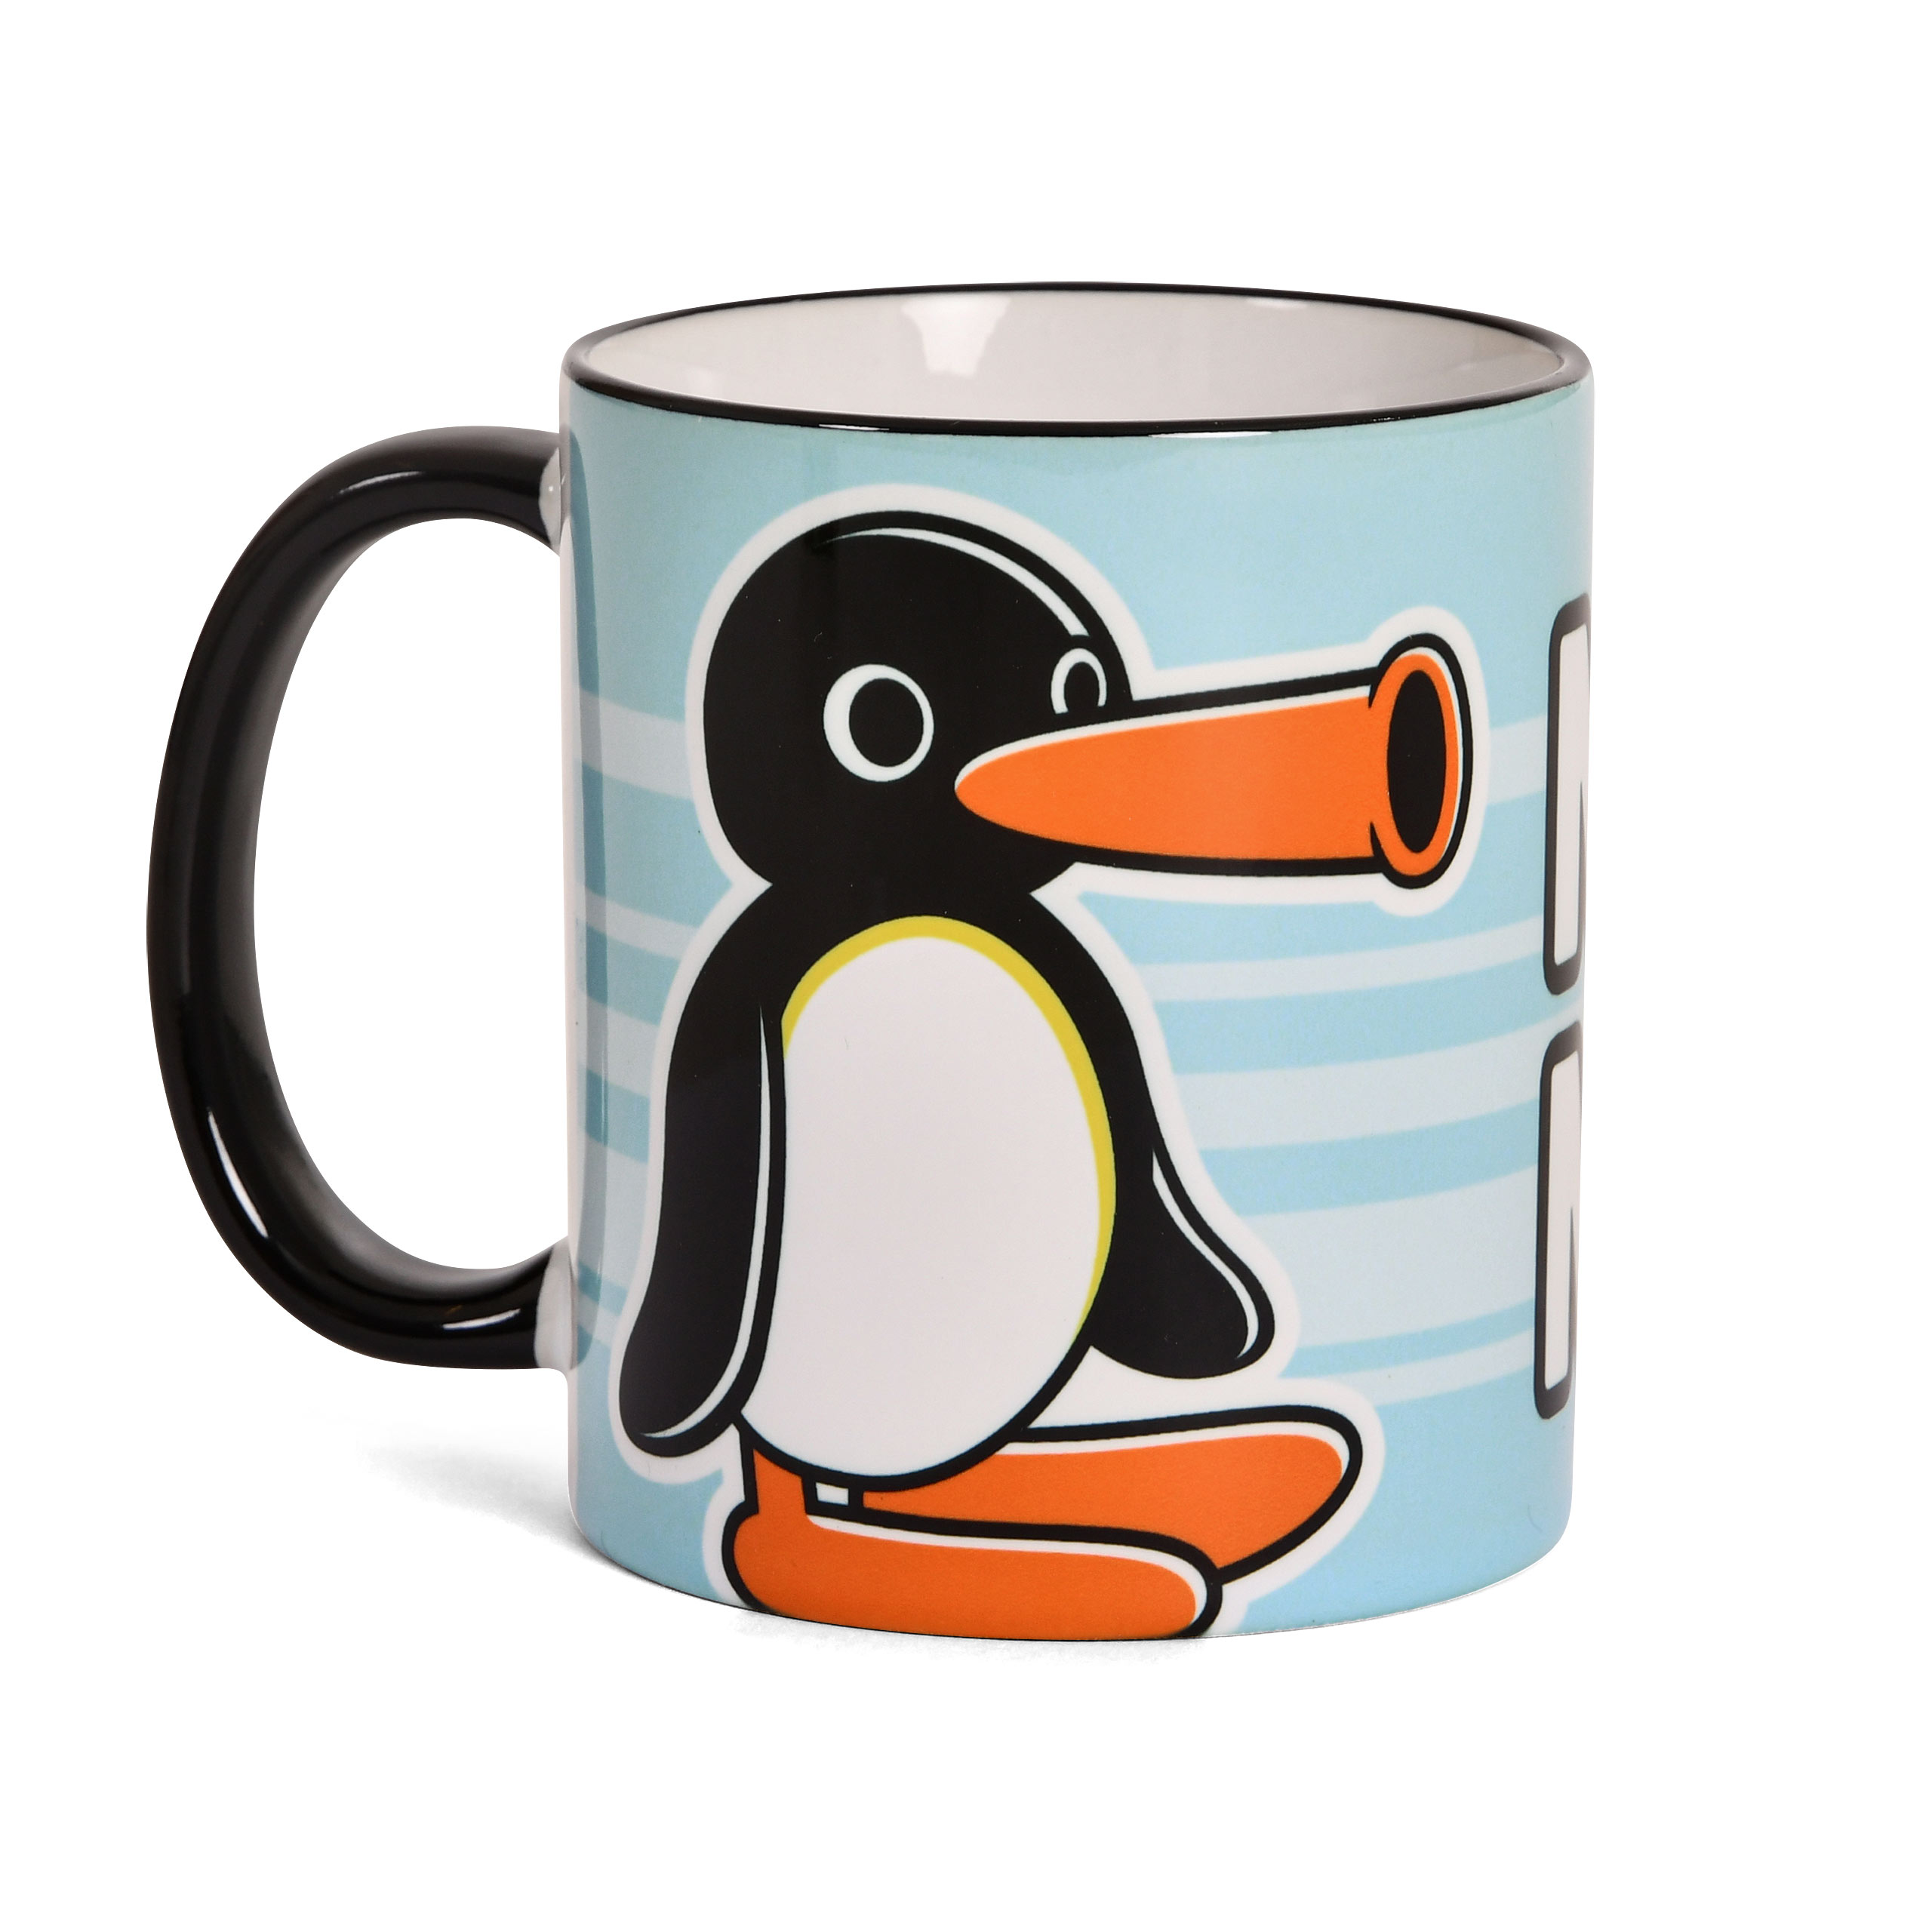 Noot Noot Tasse für Pingu Fans